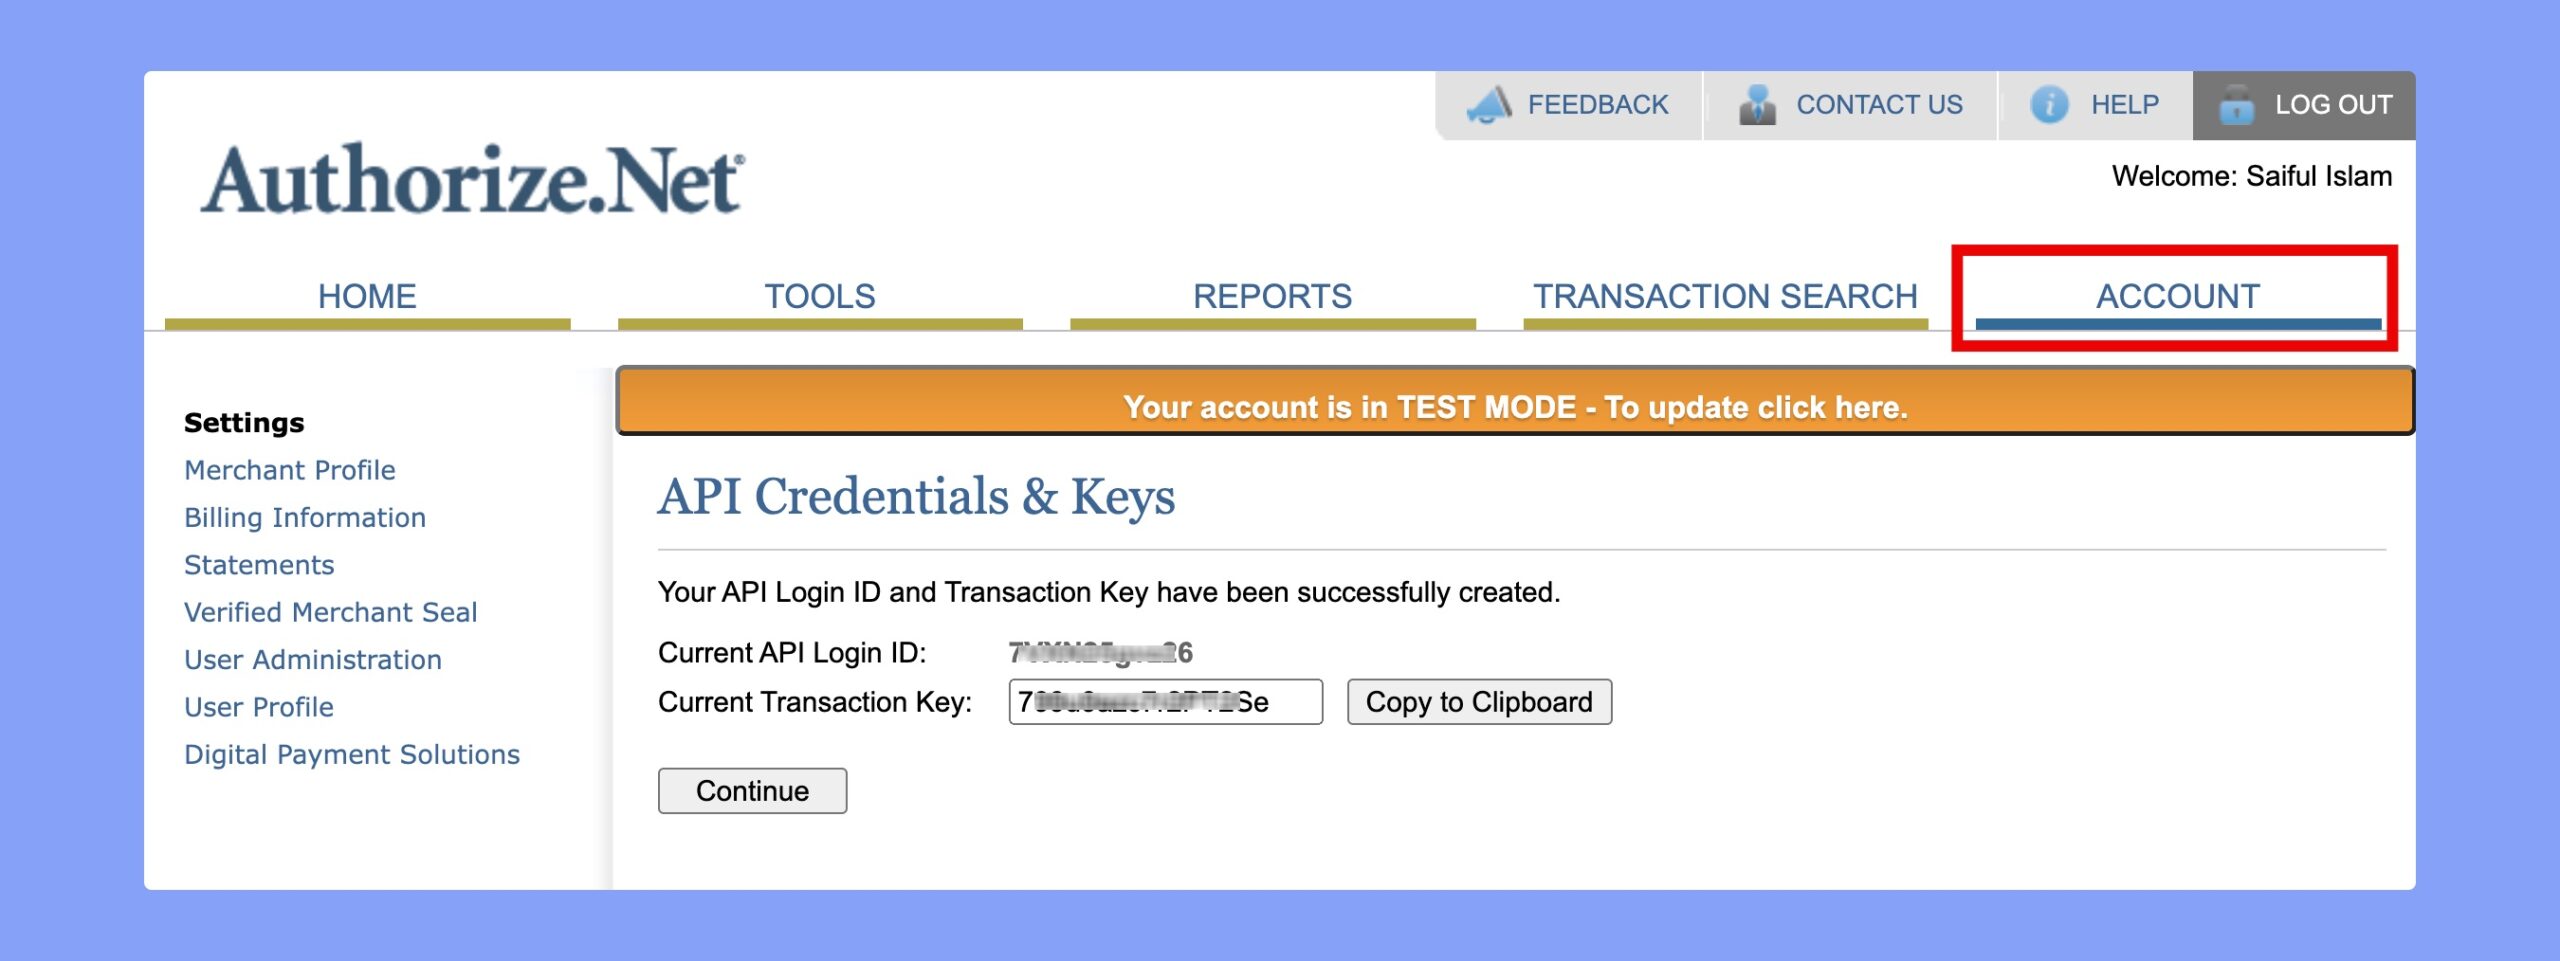 Authorize.Net API Login ID and Transaction Key